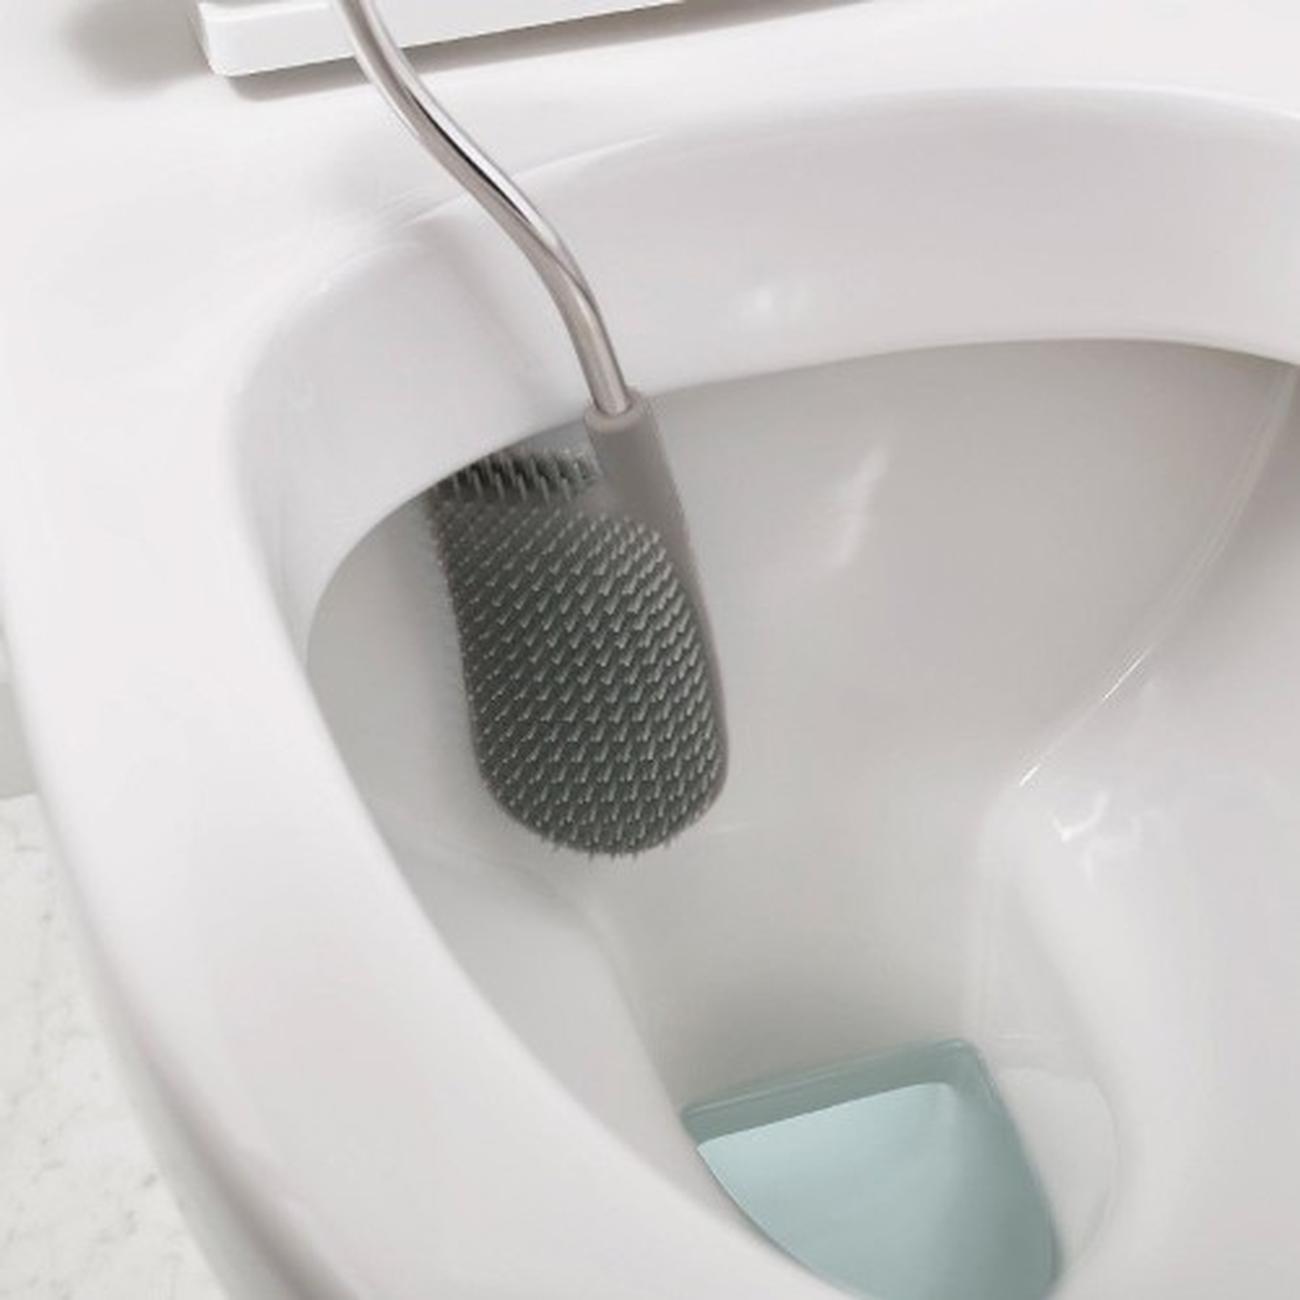 jj-flex-toilet-brush-with-holder-white-blue - Joseph Joseph Flex Toilet Brush & Holder-White Blue